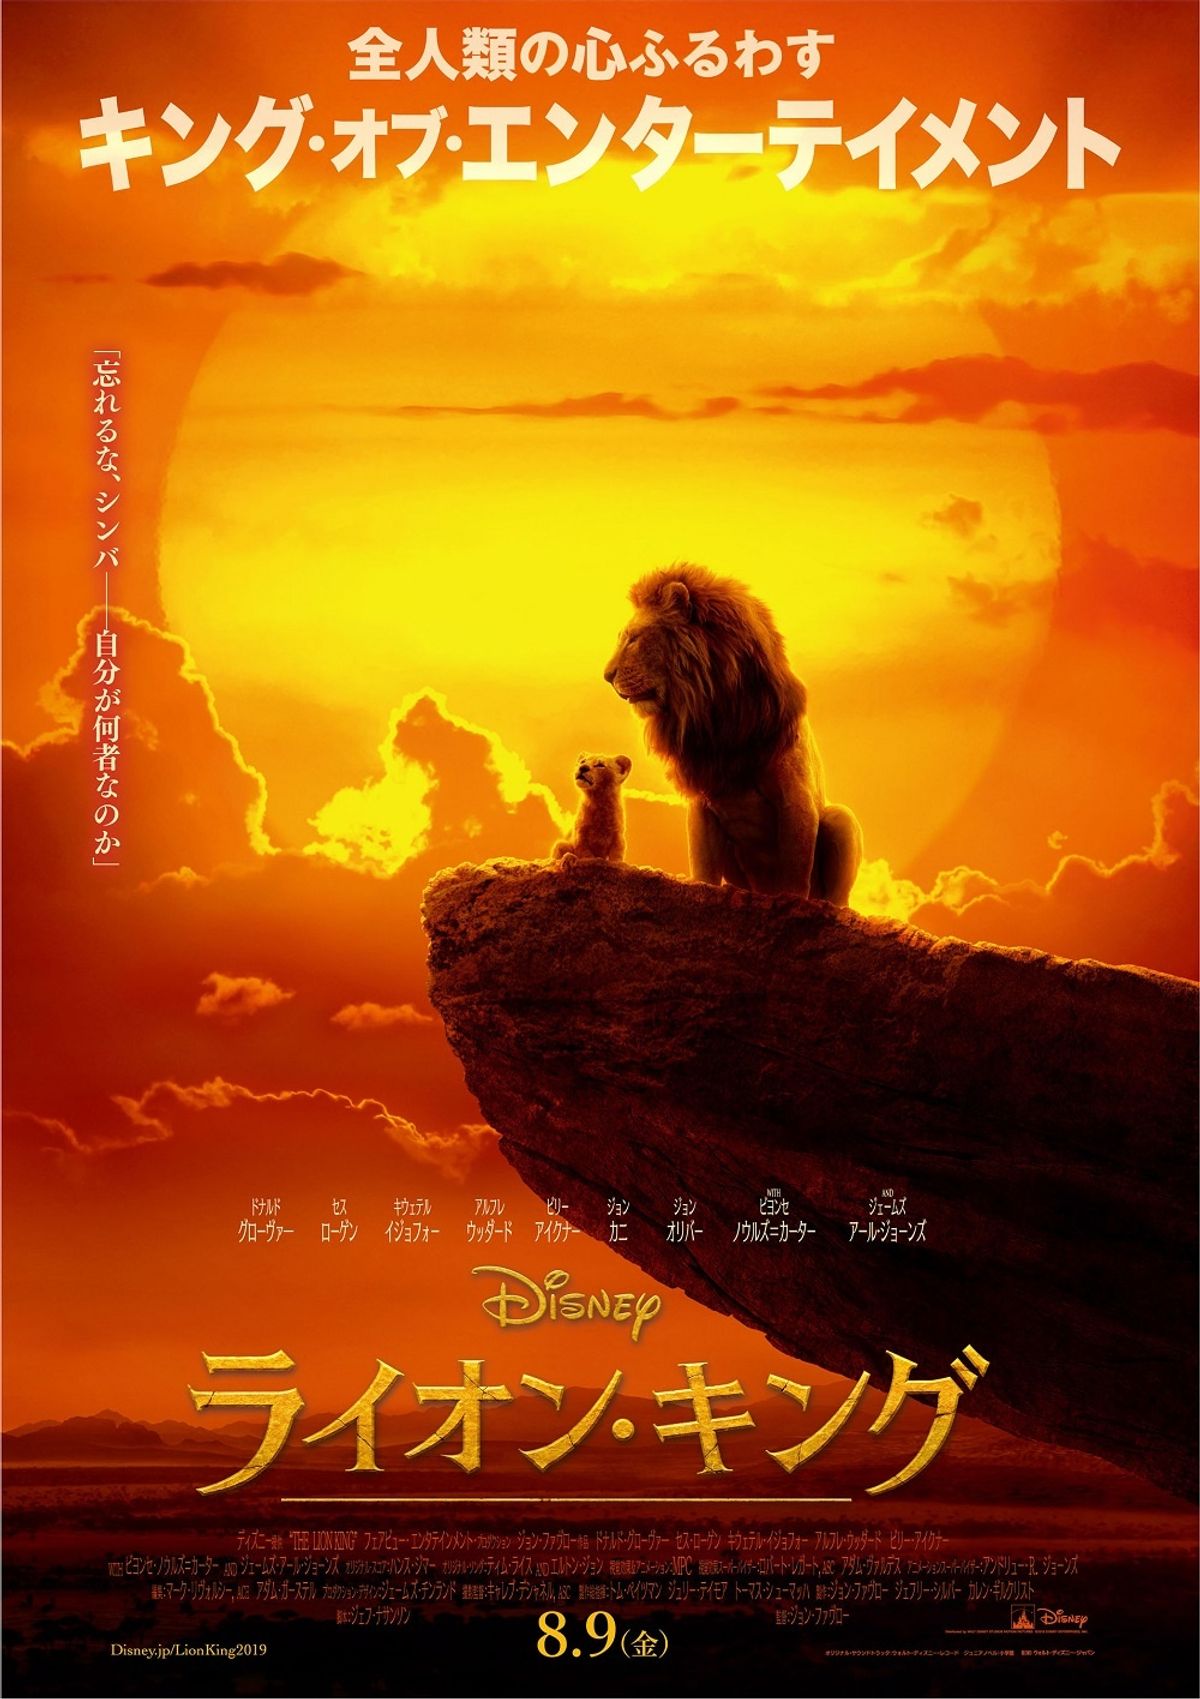 壮大な冒険がここから始まる！『ライオン・キング』日本版ポスターが 